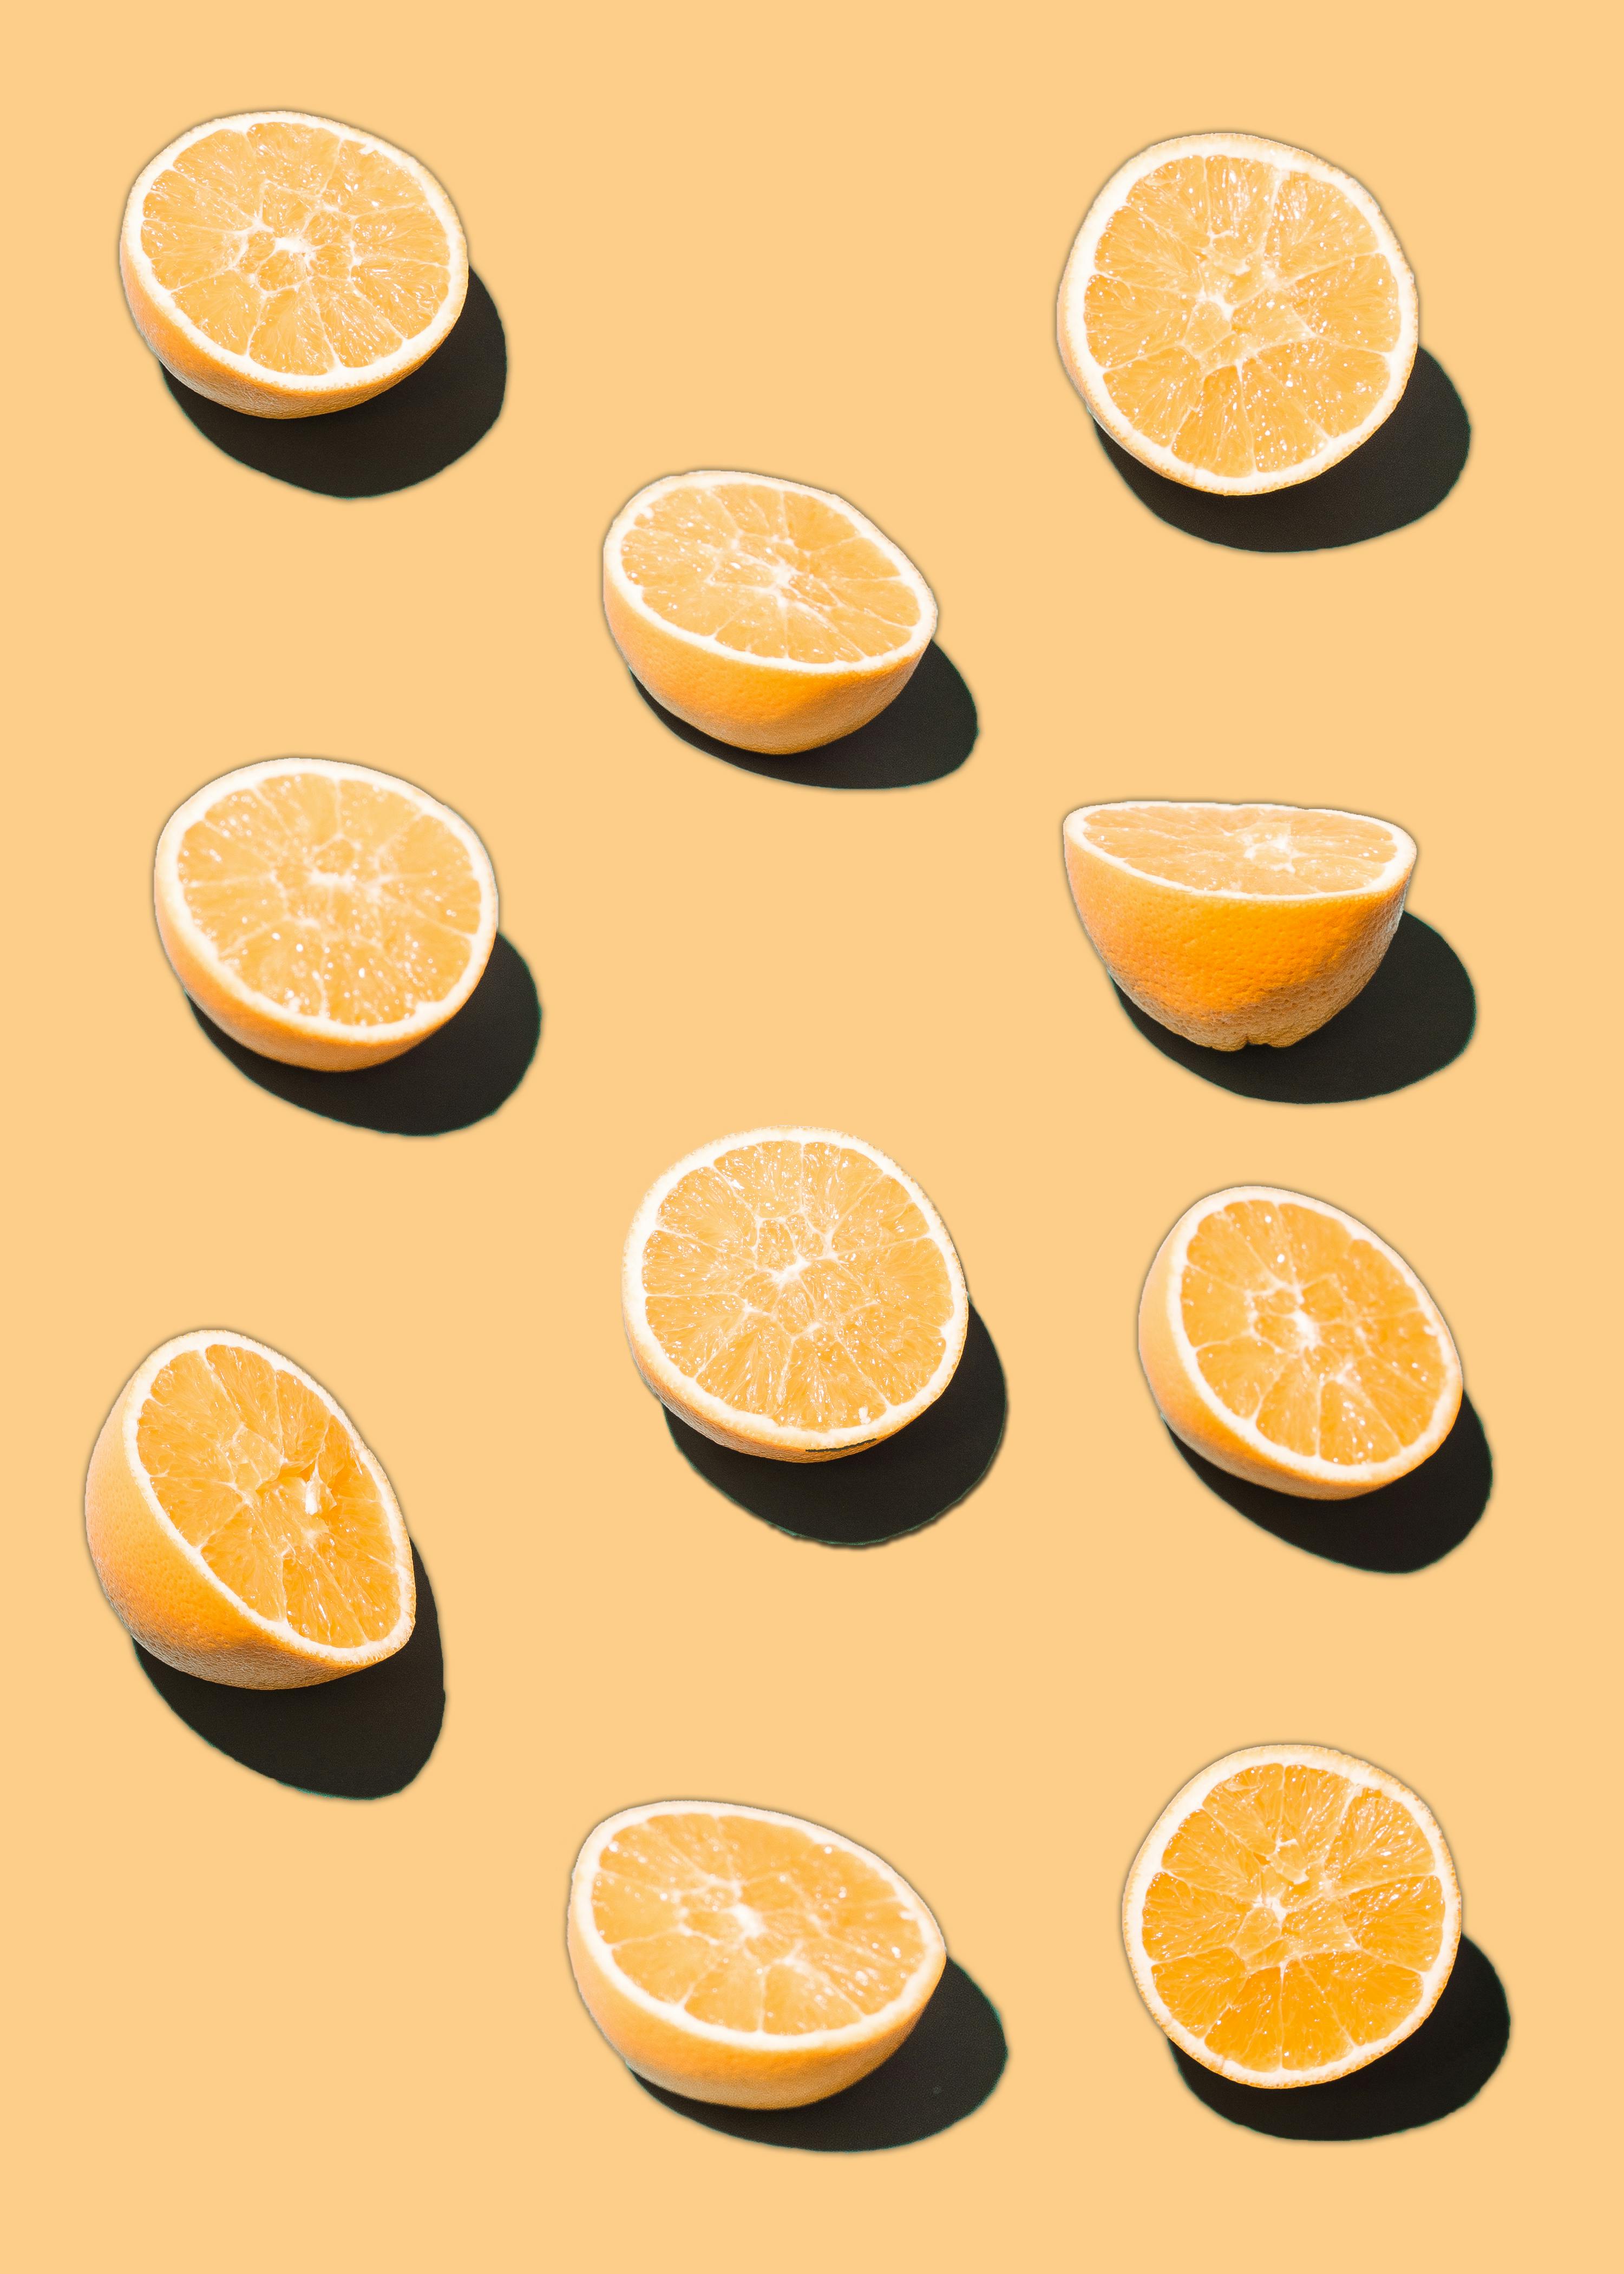 Hình ảnh nền màu cam, Tải các hình nền màu cam miễn phí tốt nhất - các bức ảnh nền màu cam sẽ khiến màn hình của bạn trở nên sinh động và độc đáo hơn bao giờ hết. Hãy tải các hình nền này ngay để biến tấu mới cho giao diện của thiết bị bạn.